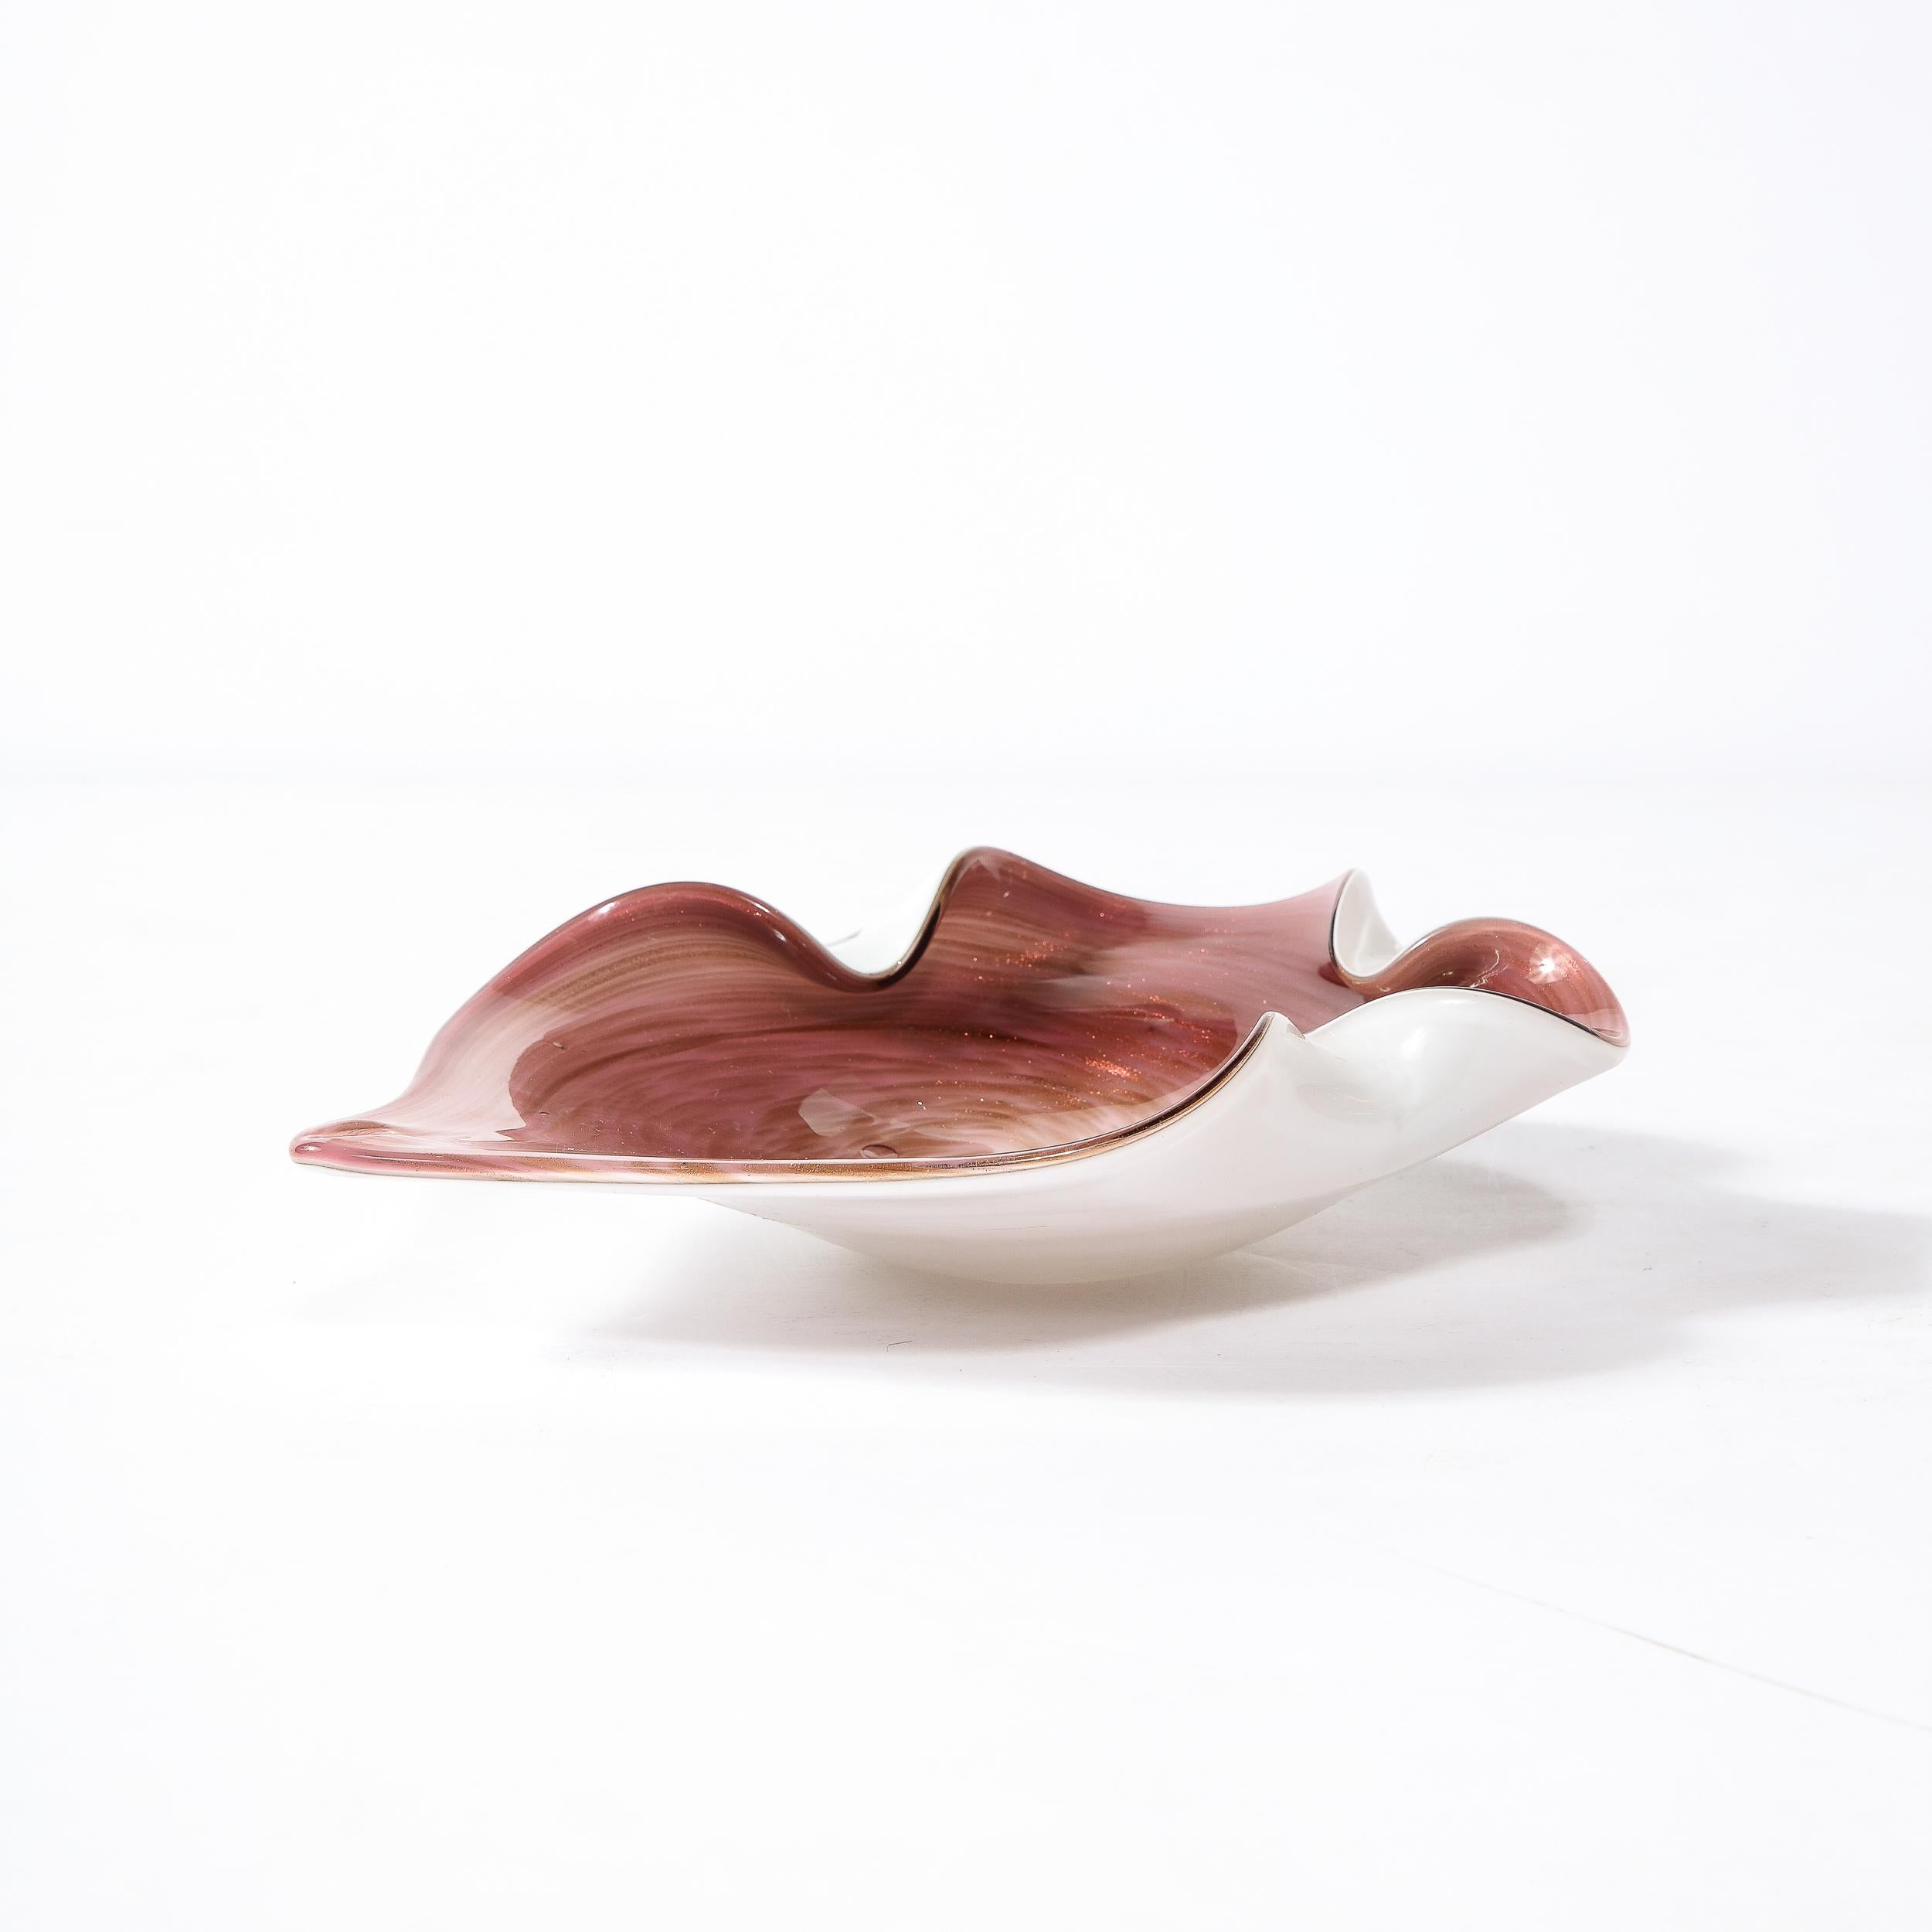 Ce superbe plat en verre de Murano soufflé à la main provient d'Italie vers 1960. Il est réalisé dans un verre de couleur améthyste, filé pour se fondre dans la teinte de la surface inférieure, avec des détails ondulés blanc perle sur trois bords,